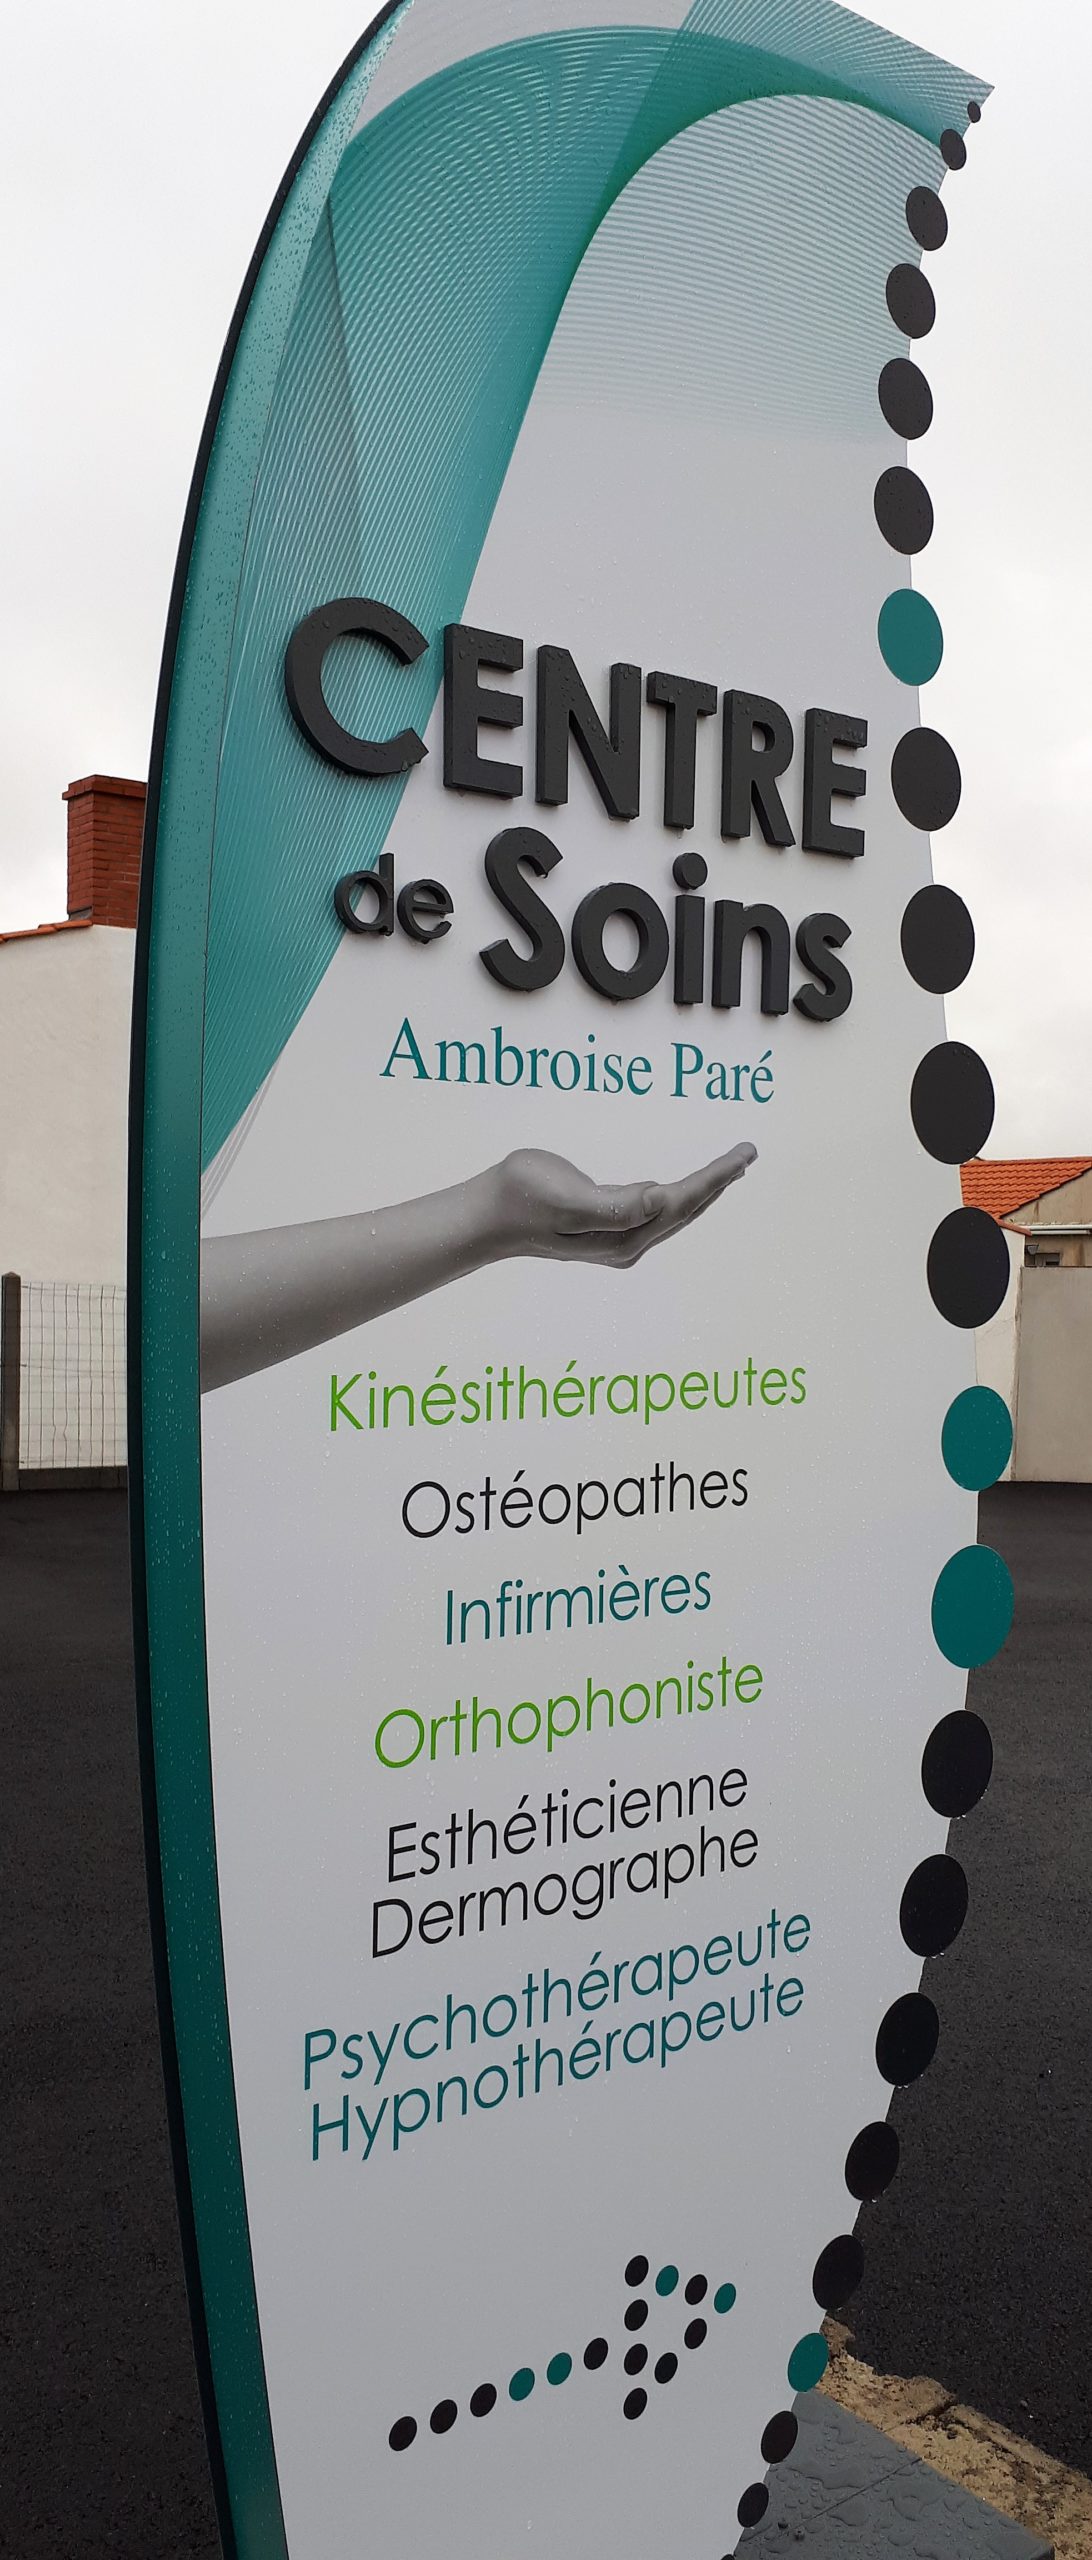 Centre de Soins: Ambroise Paré, Saint Gilles Croix de Vie